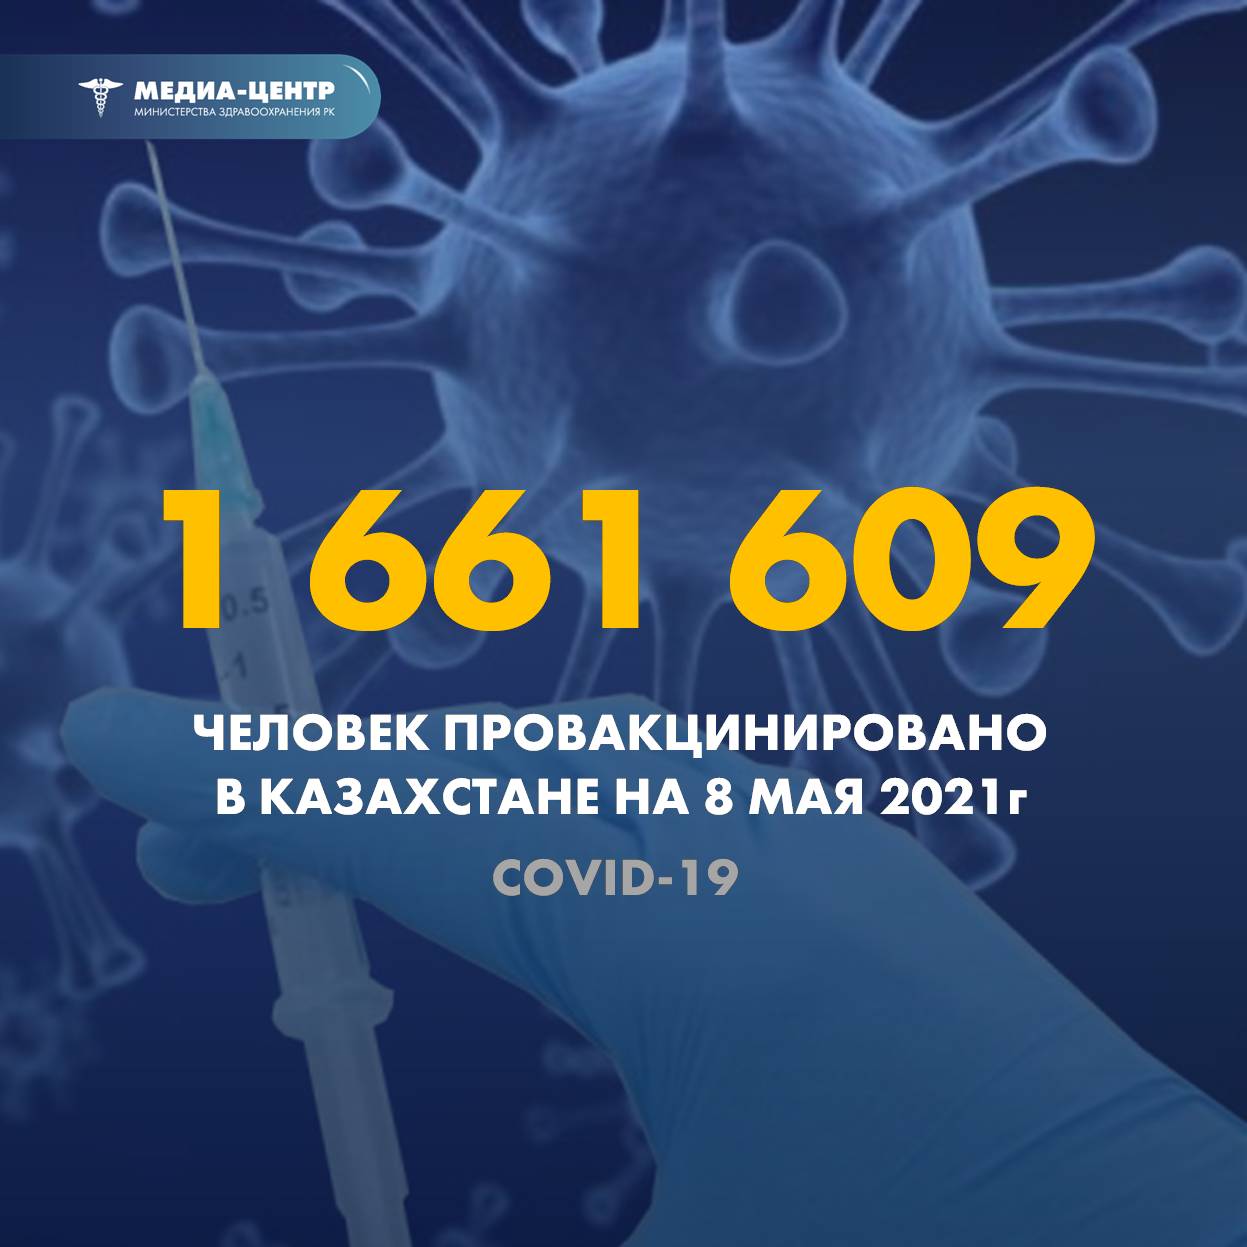 1 661 609 человек провакцинировано в Казахстане на 8 мая 2021 г